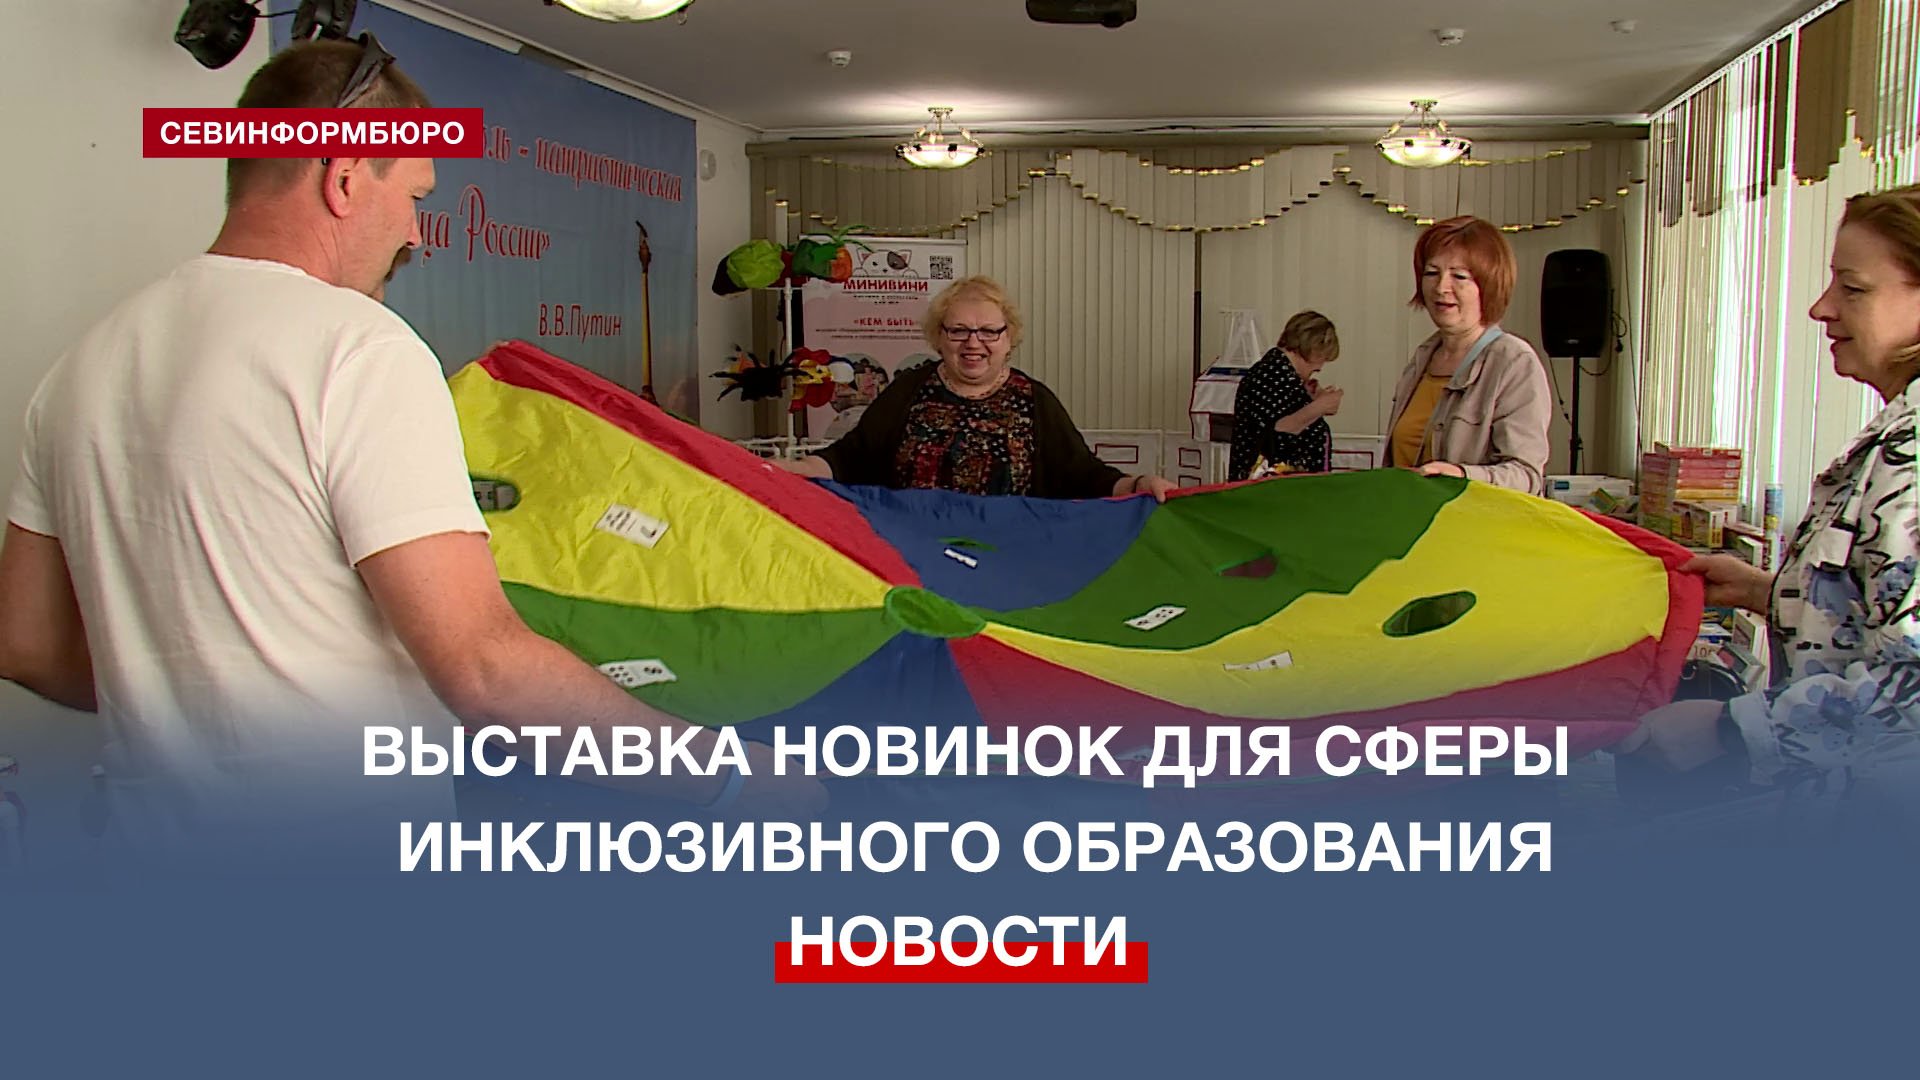 В Севастополе впервые прошла выставка новинок для сферы инклюзивного образования